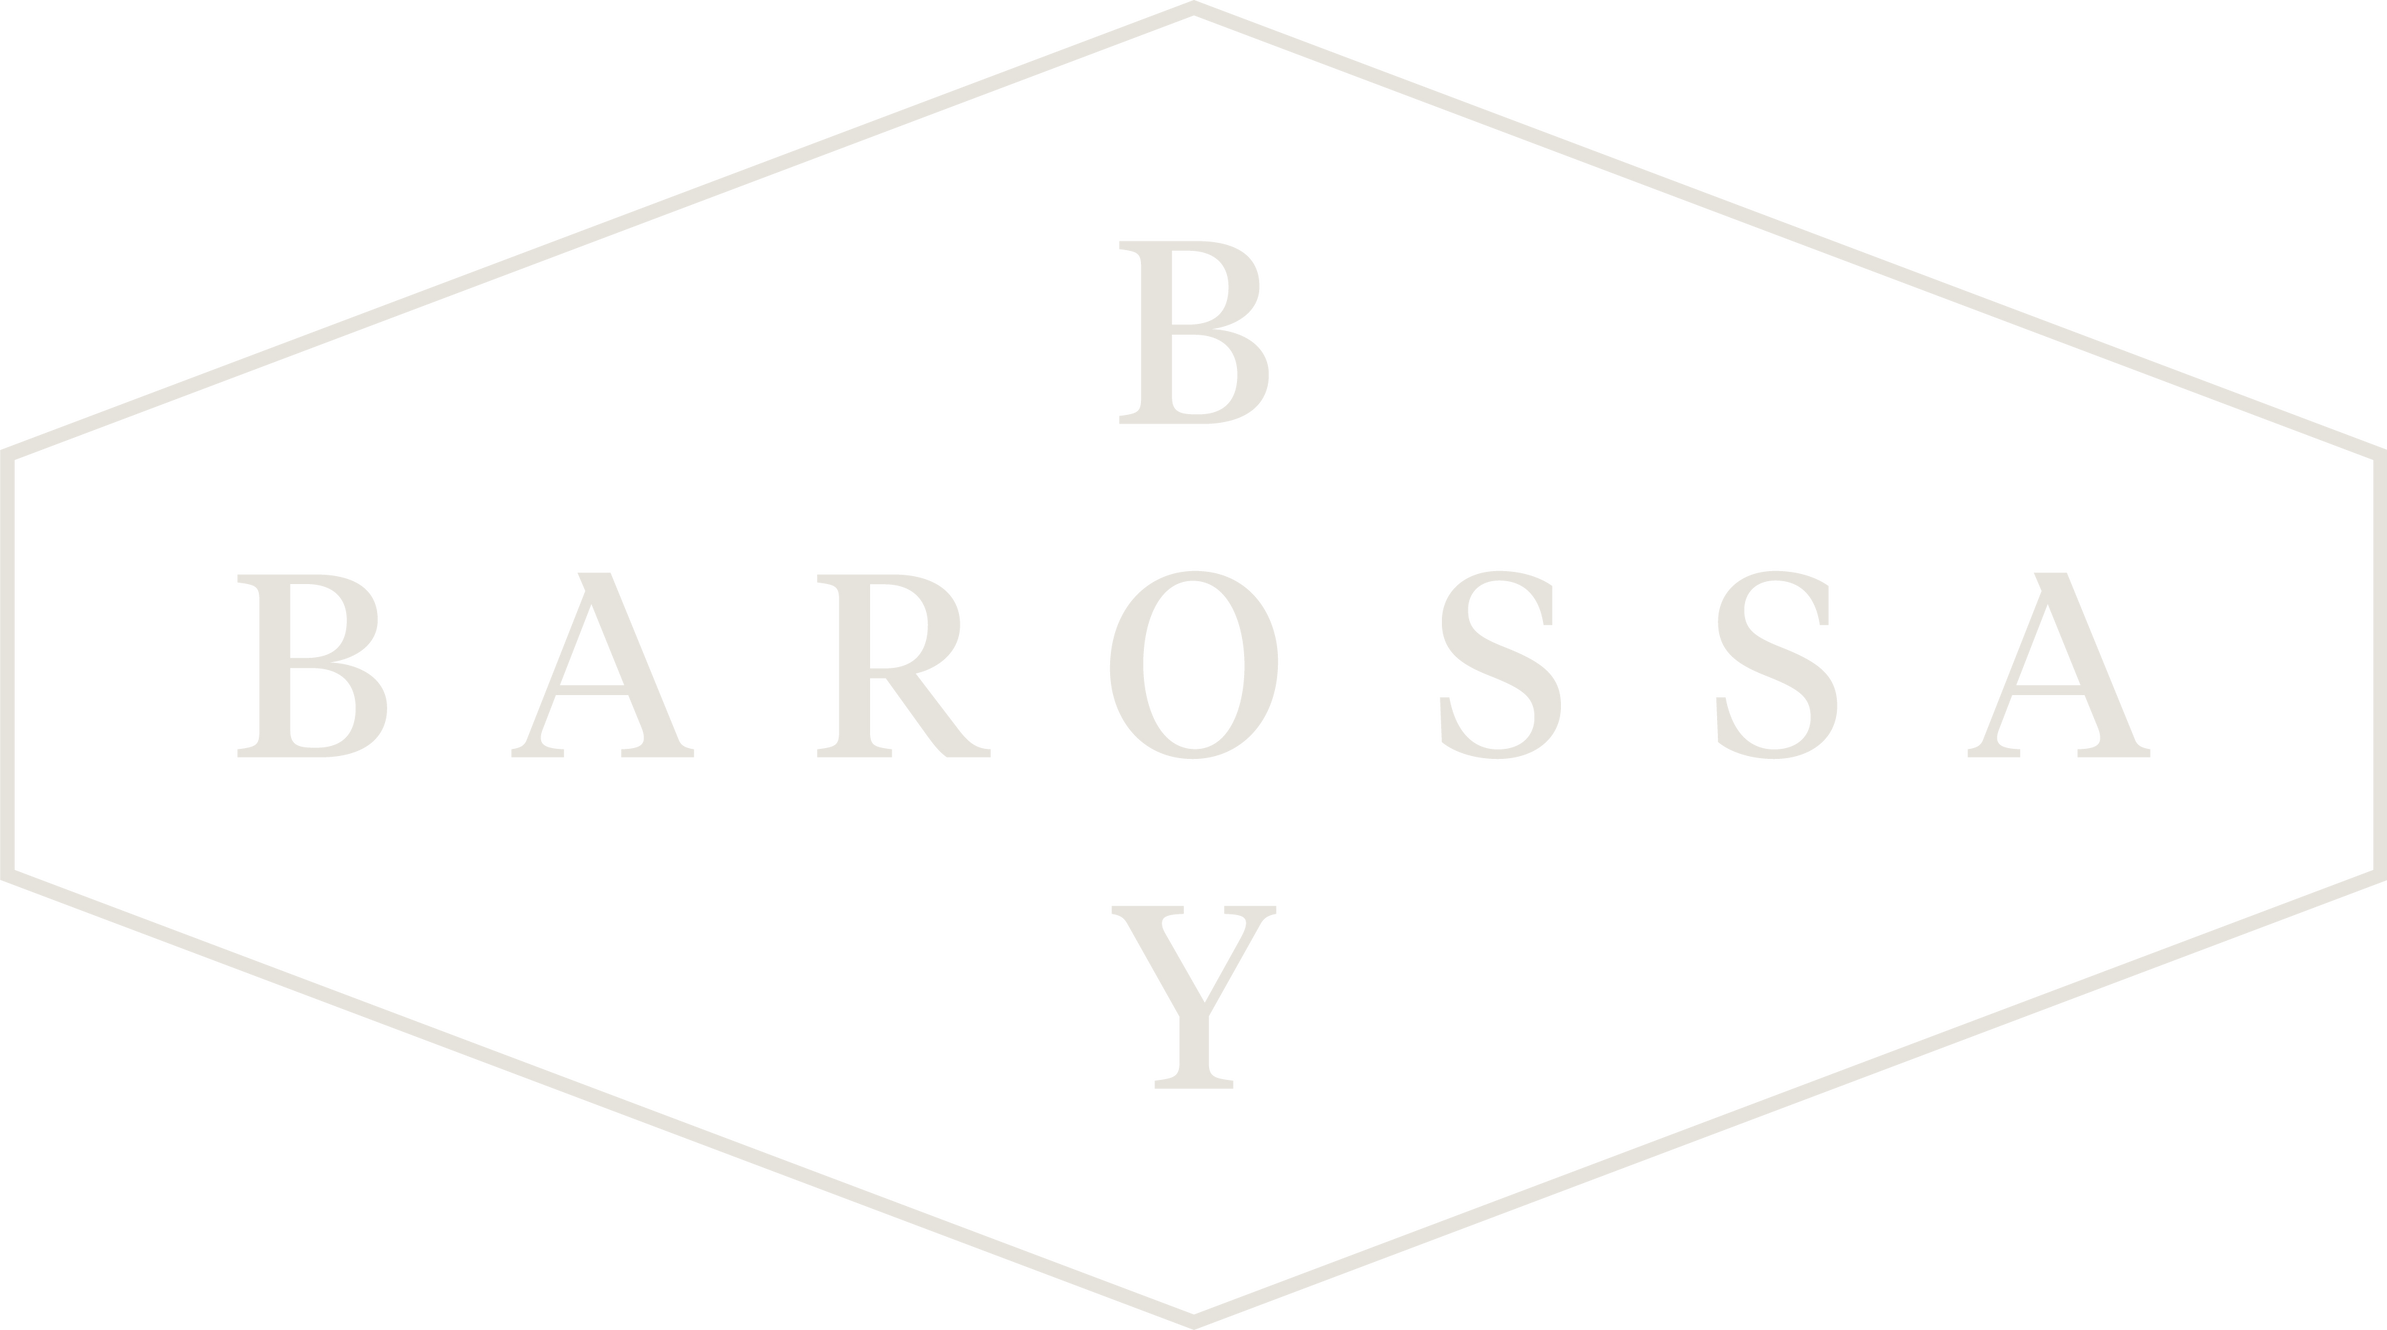 www.barossaboywines.com.au